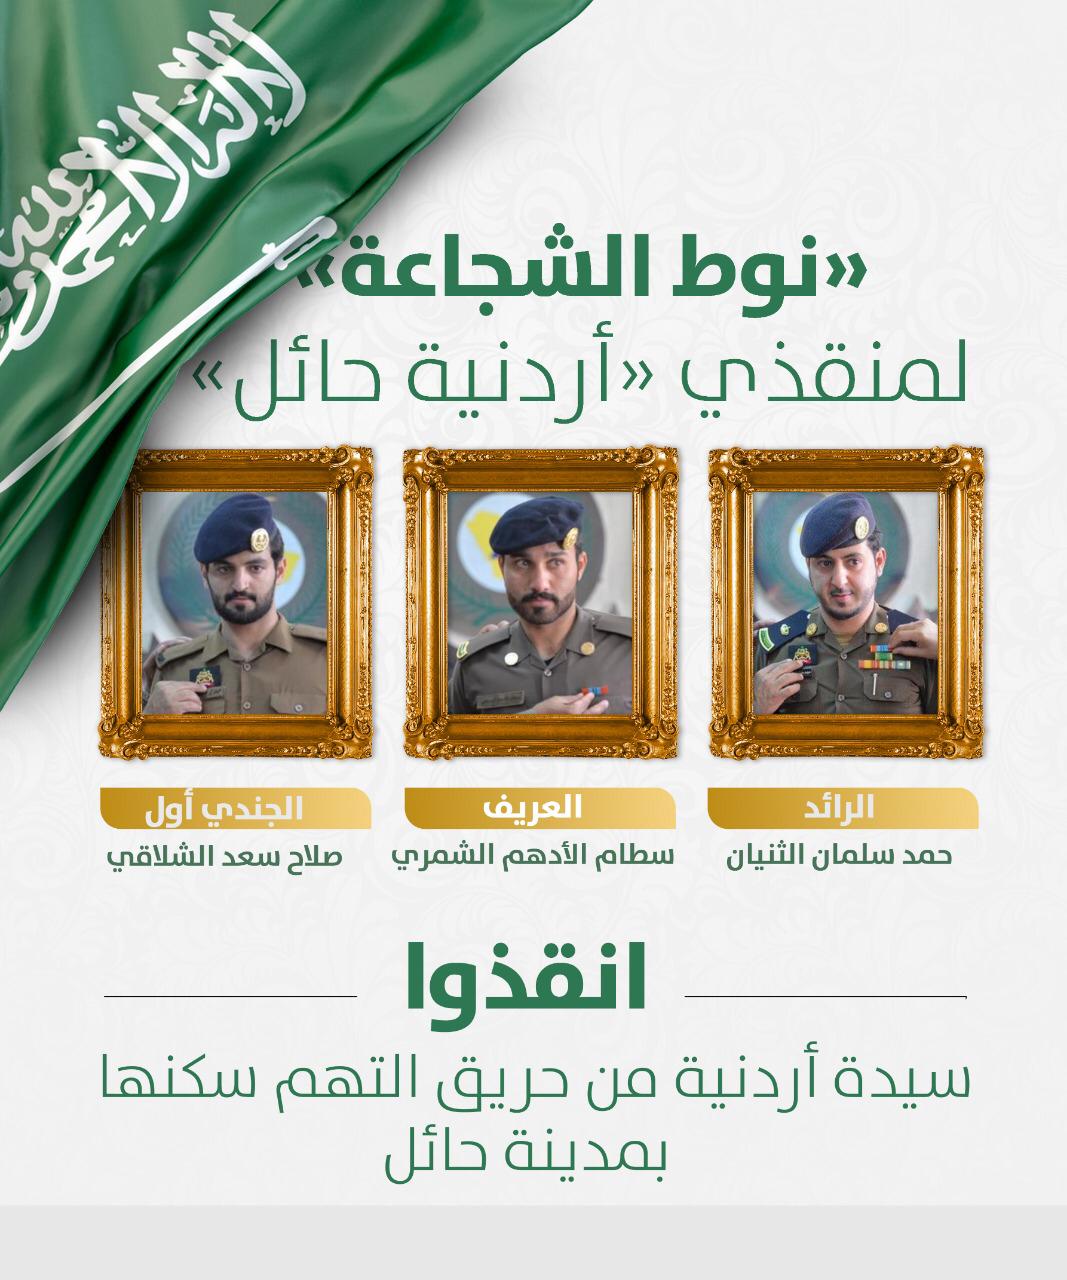 السعوديون أهل نخوة وشجاعة والدليل الأبطال الثلاثة